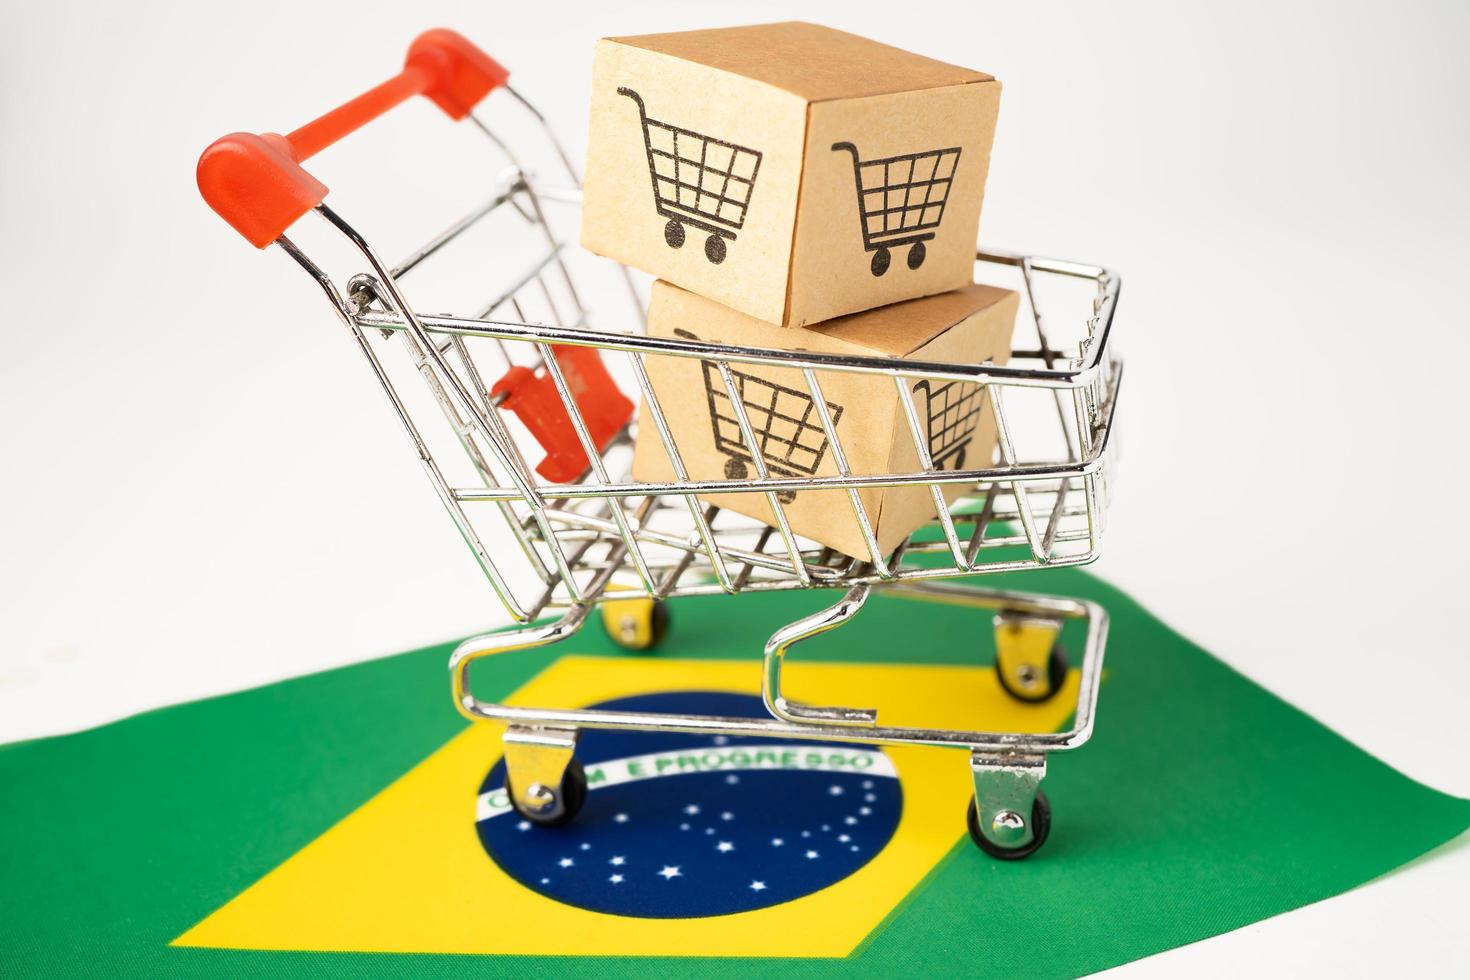 caja con el logotipo del carrito de compras y la bandera de Brasil, importación, exportación, compras en línea o comercio electrónico, servicio de entrega de finanzas, tienda, envío de productos, comercio, concepto de proveedor. foto